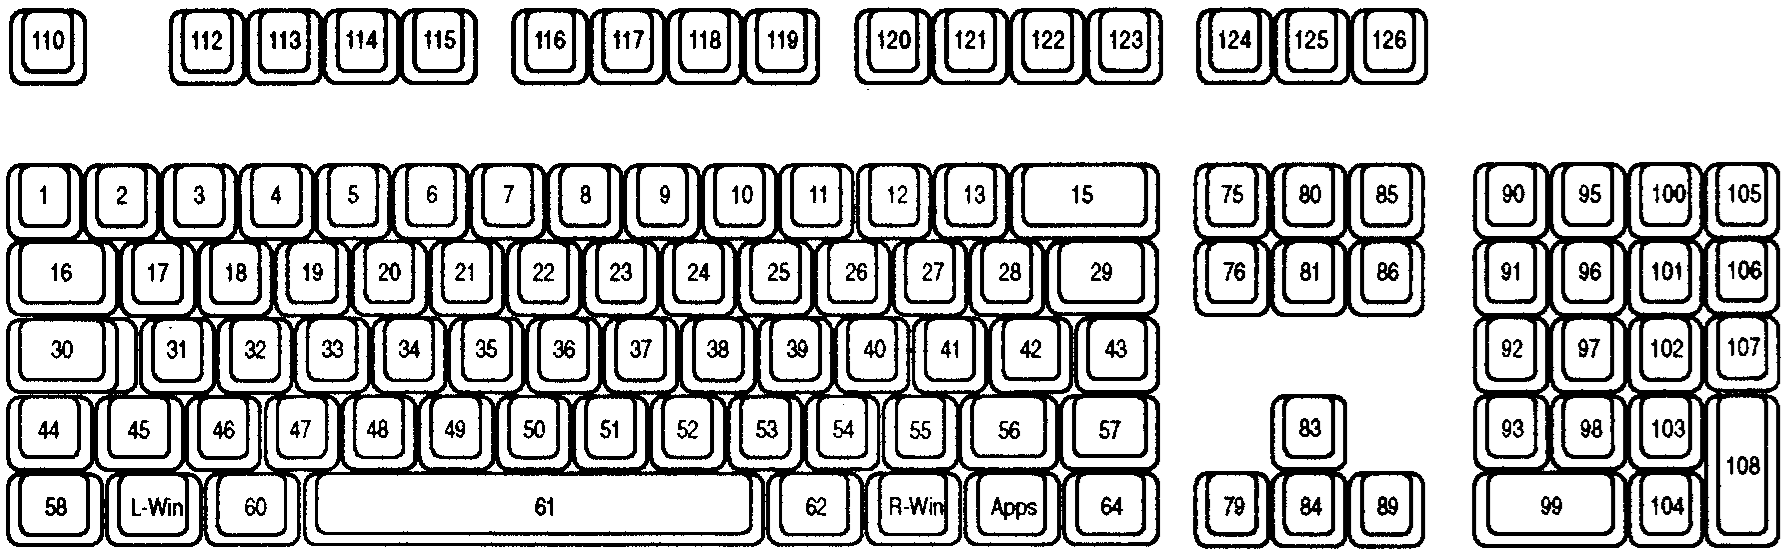 类型 4 键盘示意图，其中包含每个键的键位置。